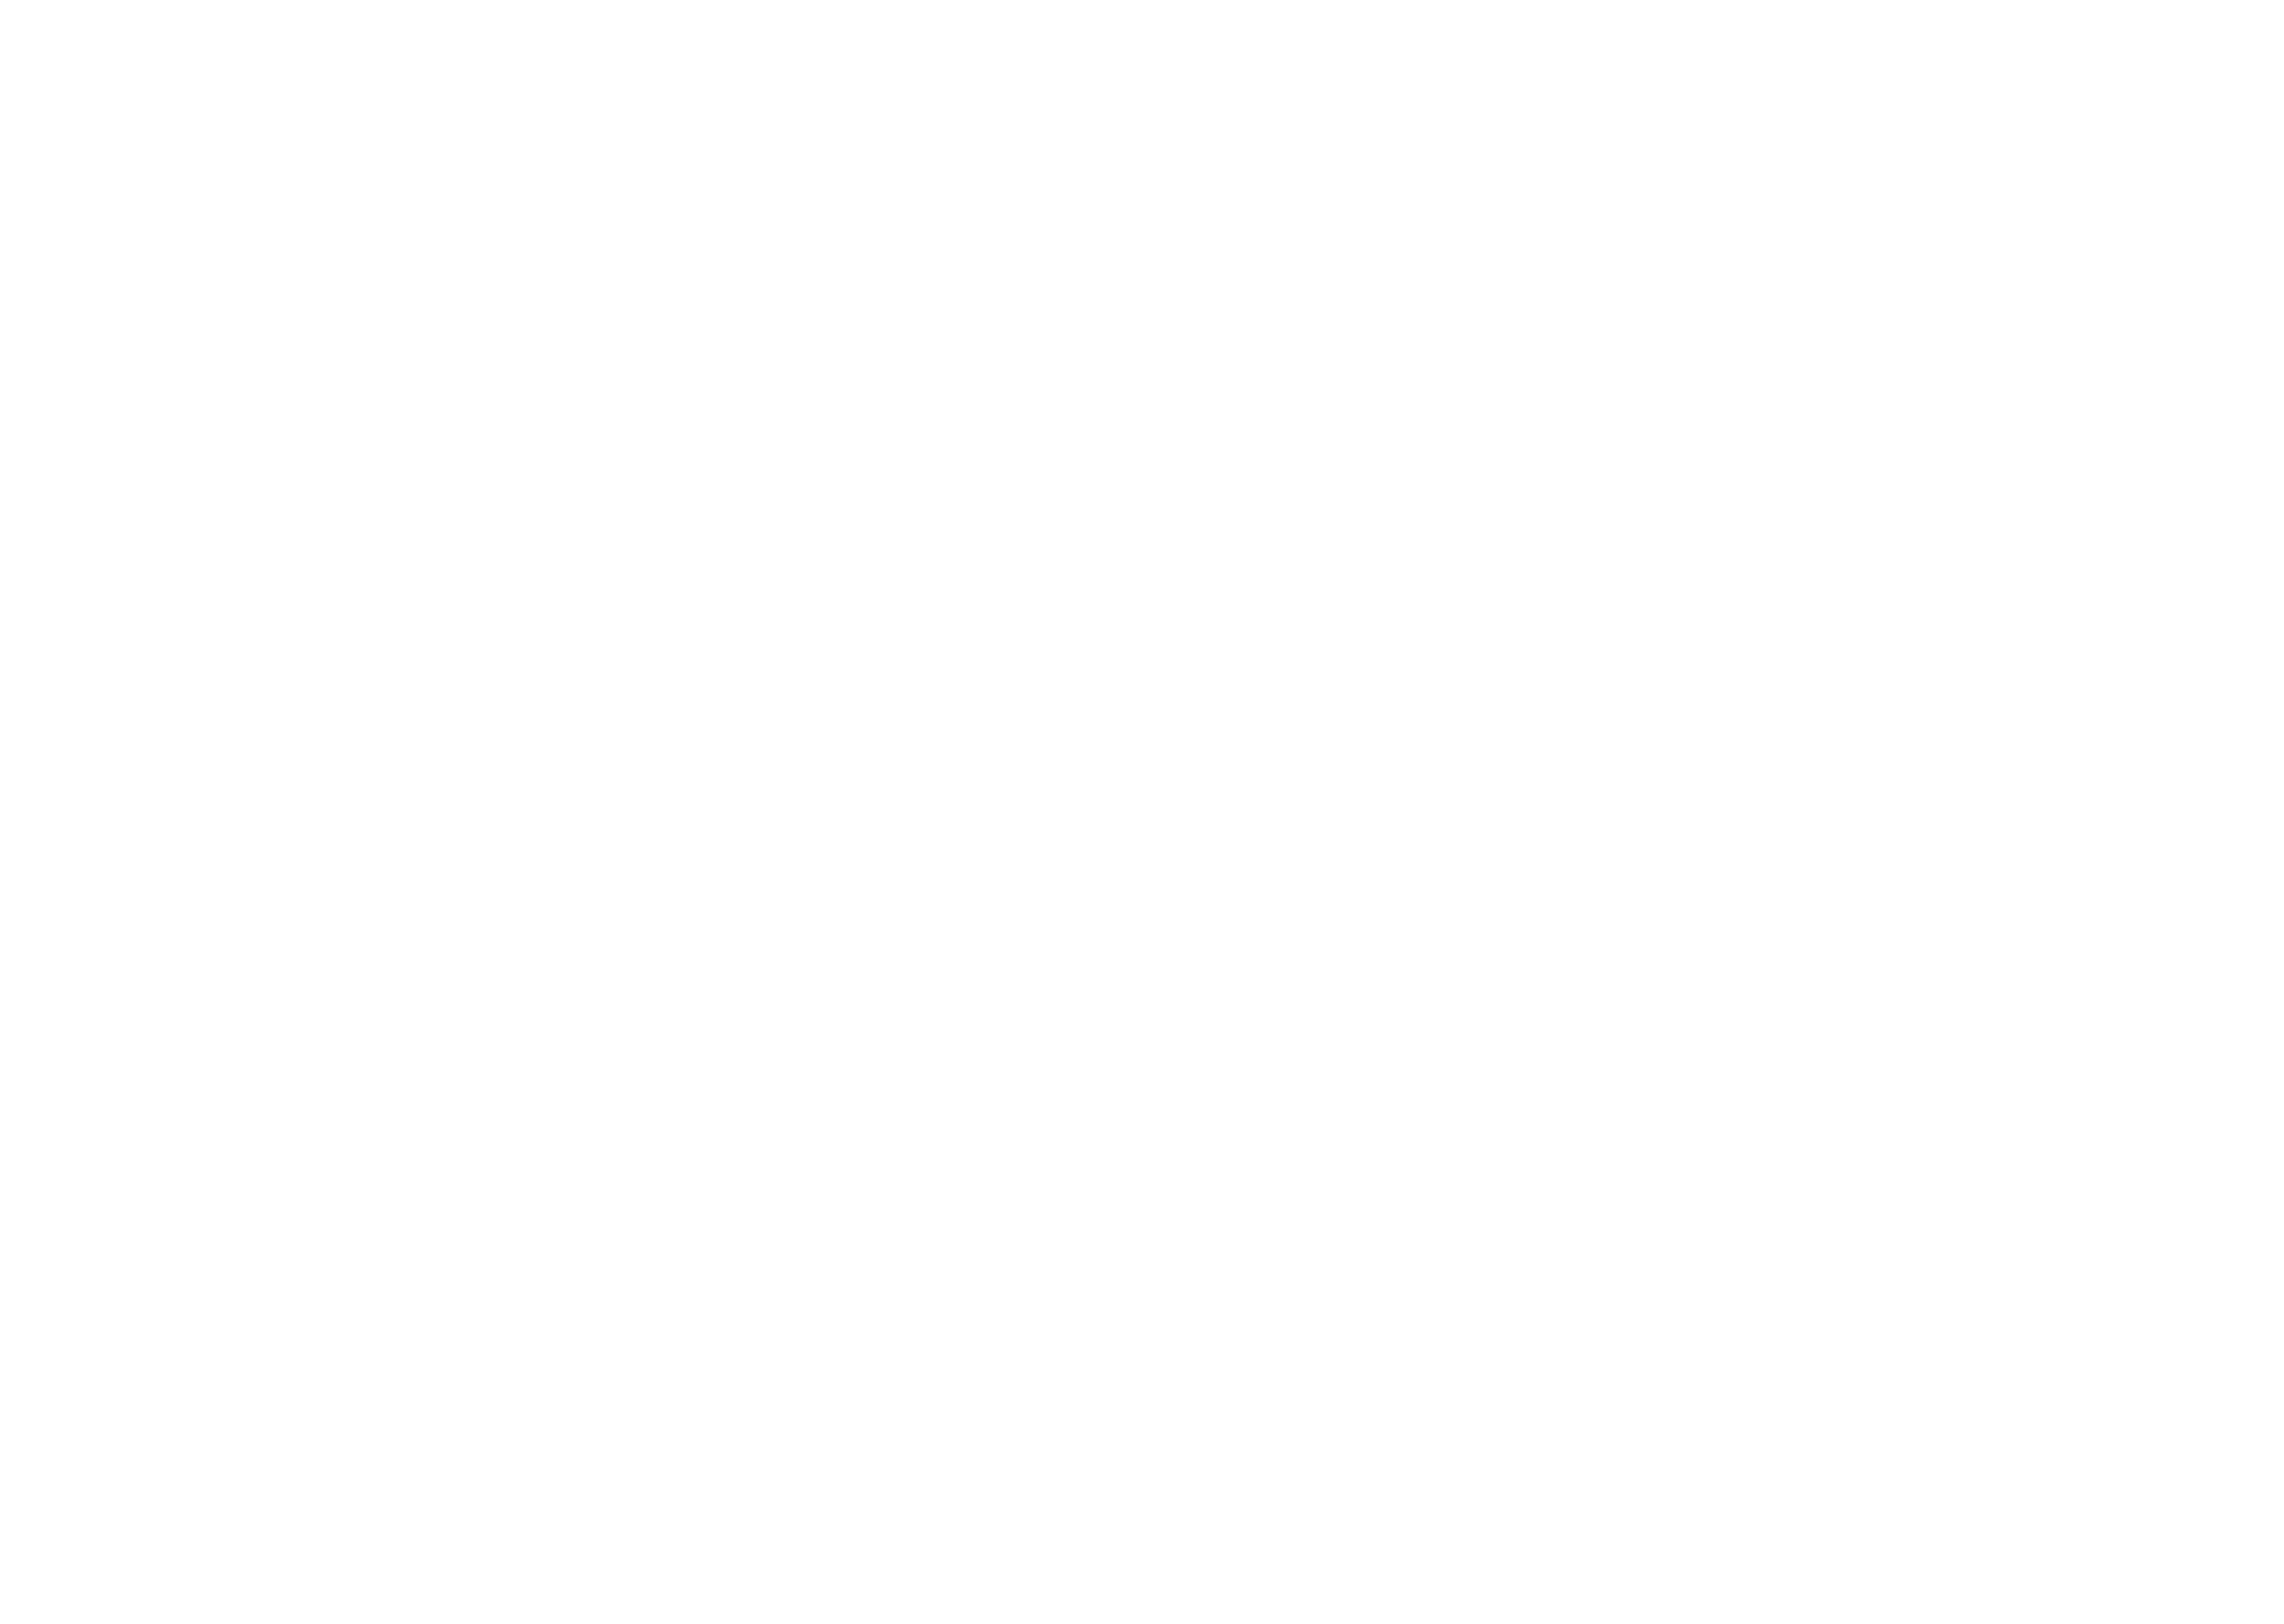 zelens logo - white.png